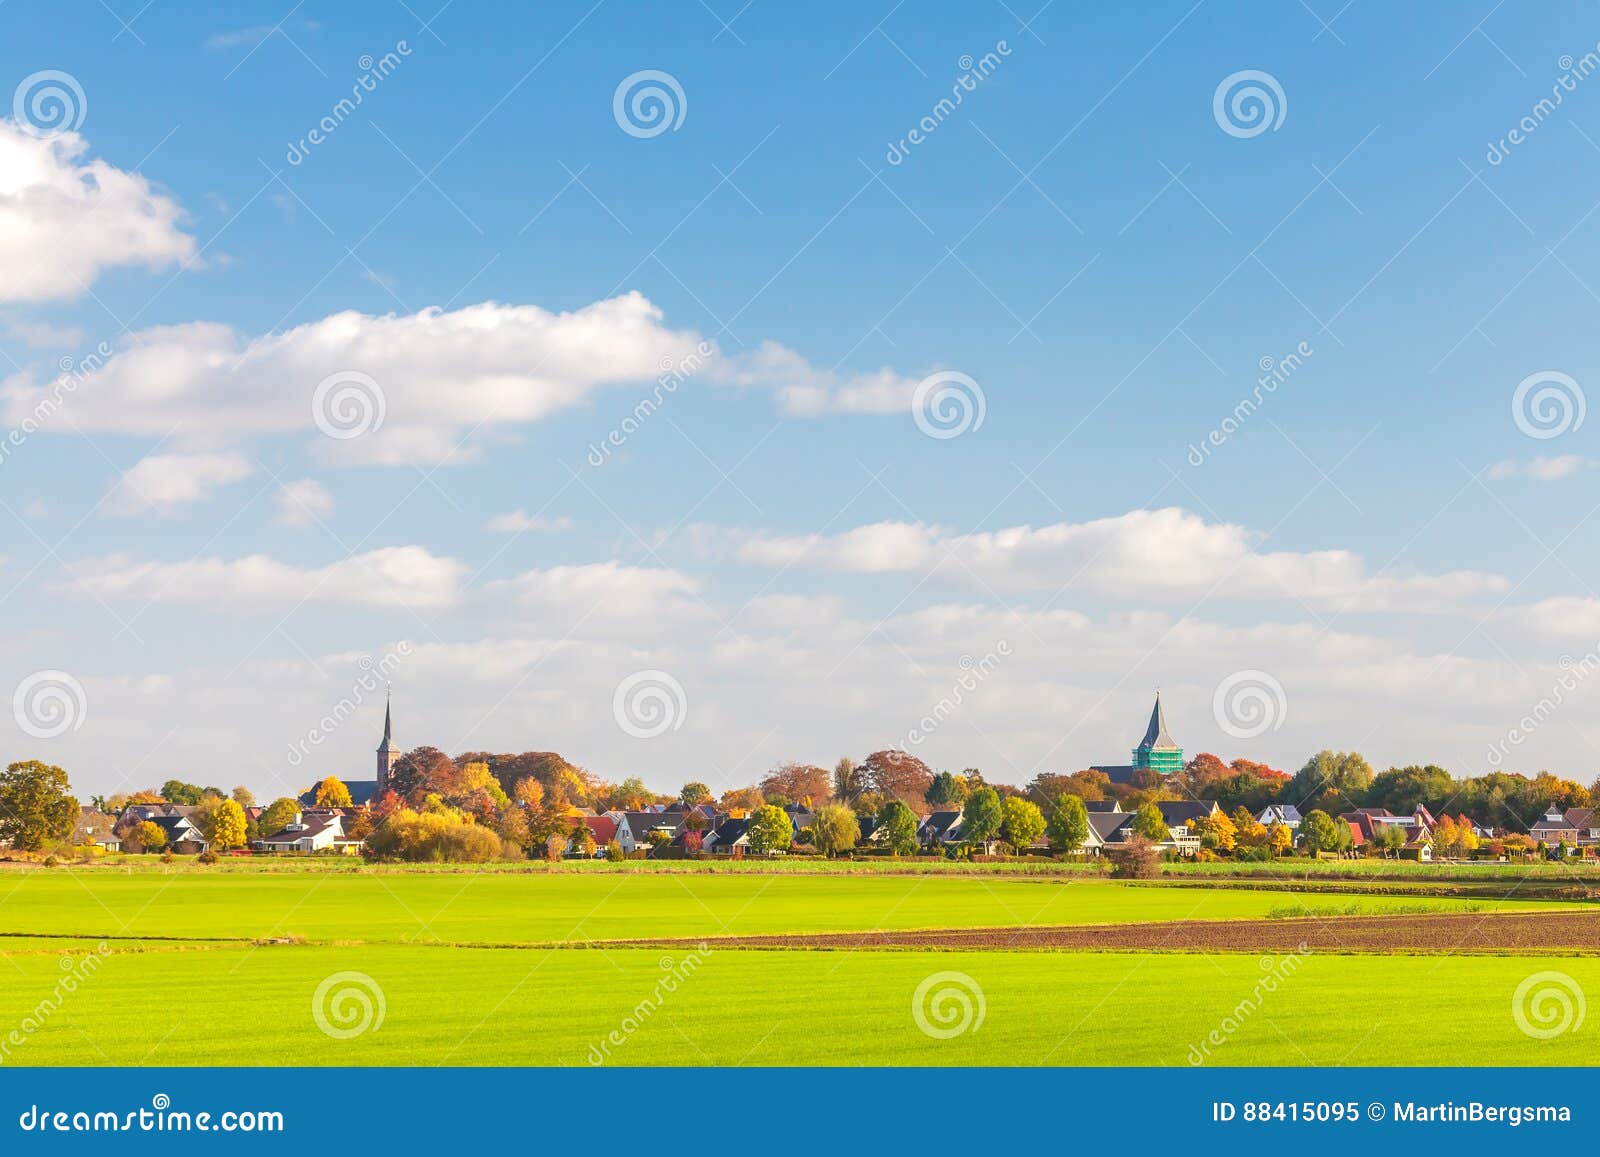 small village in the dutch province of gelderland